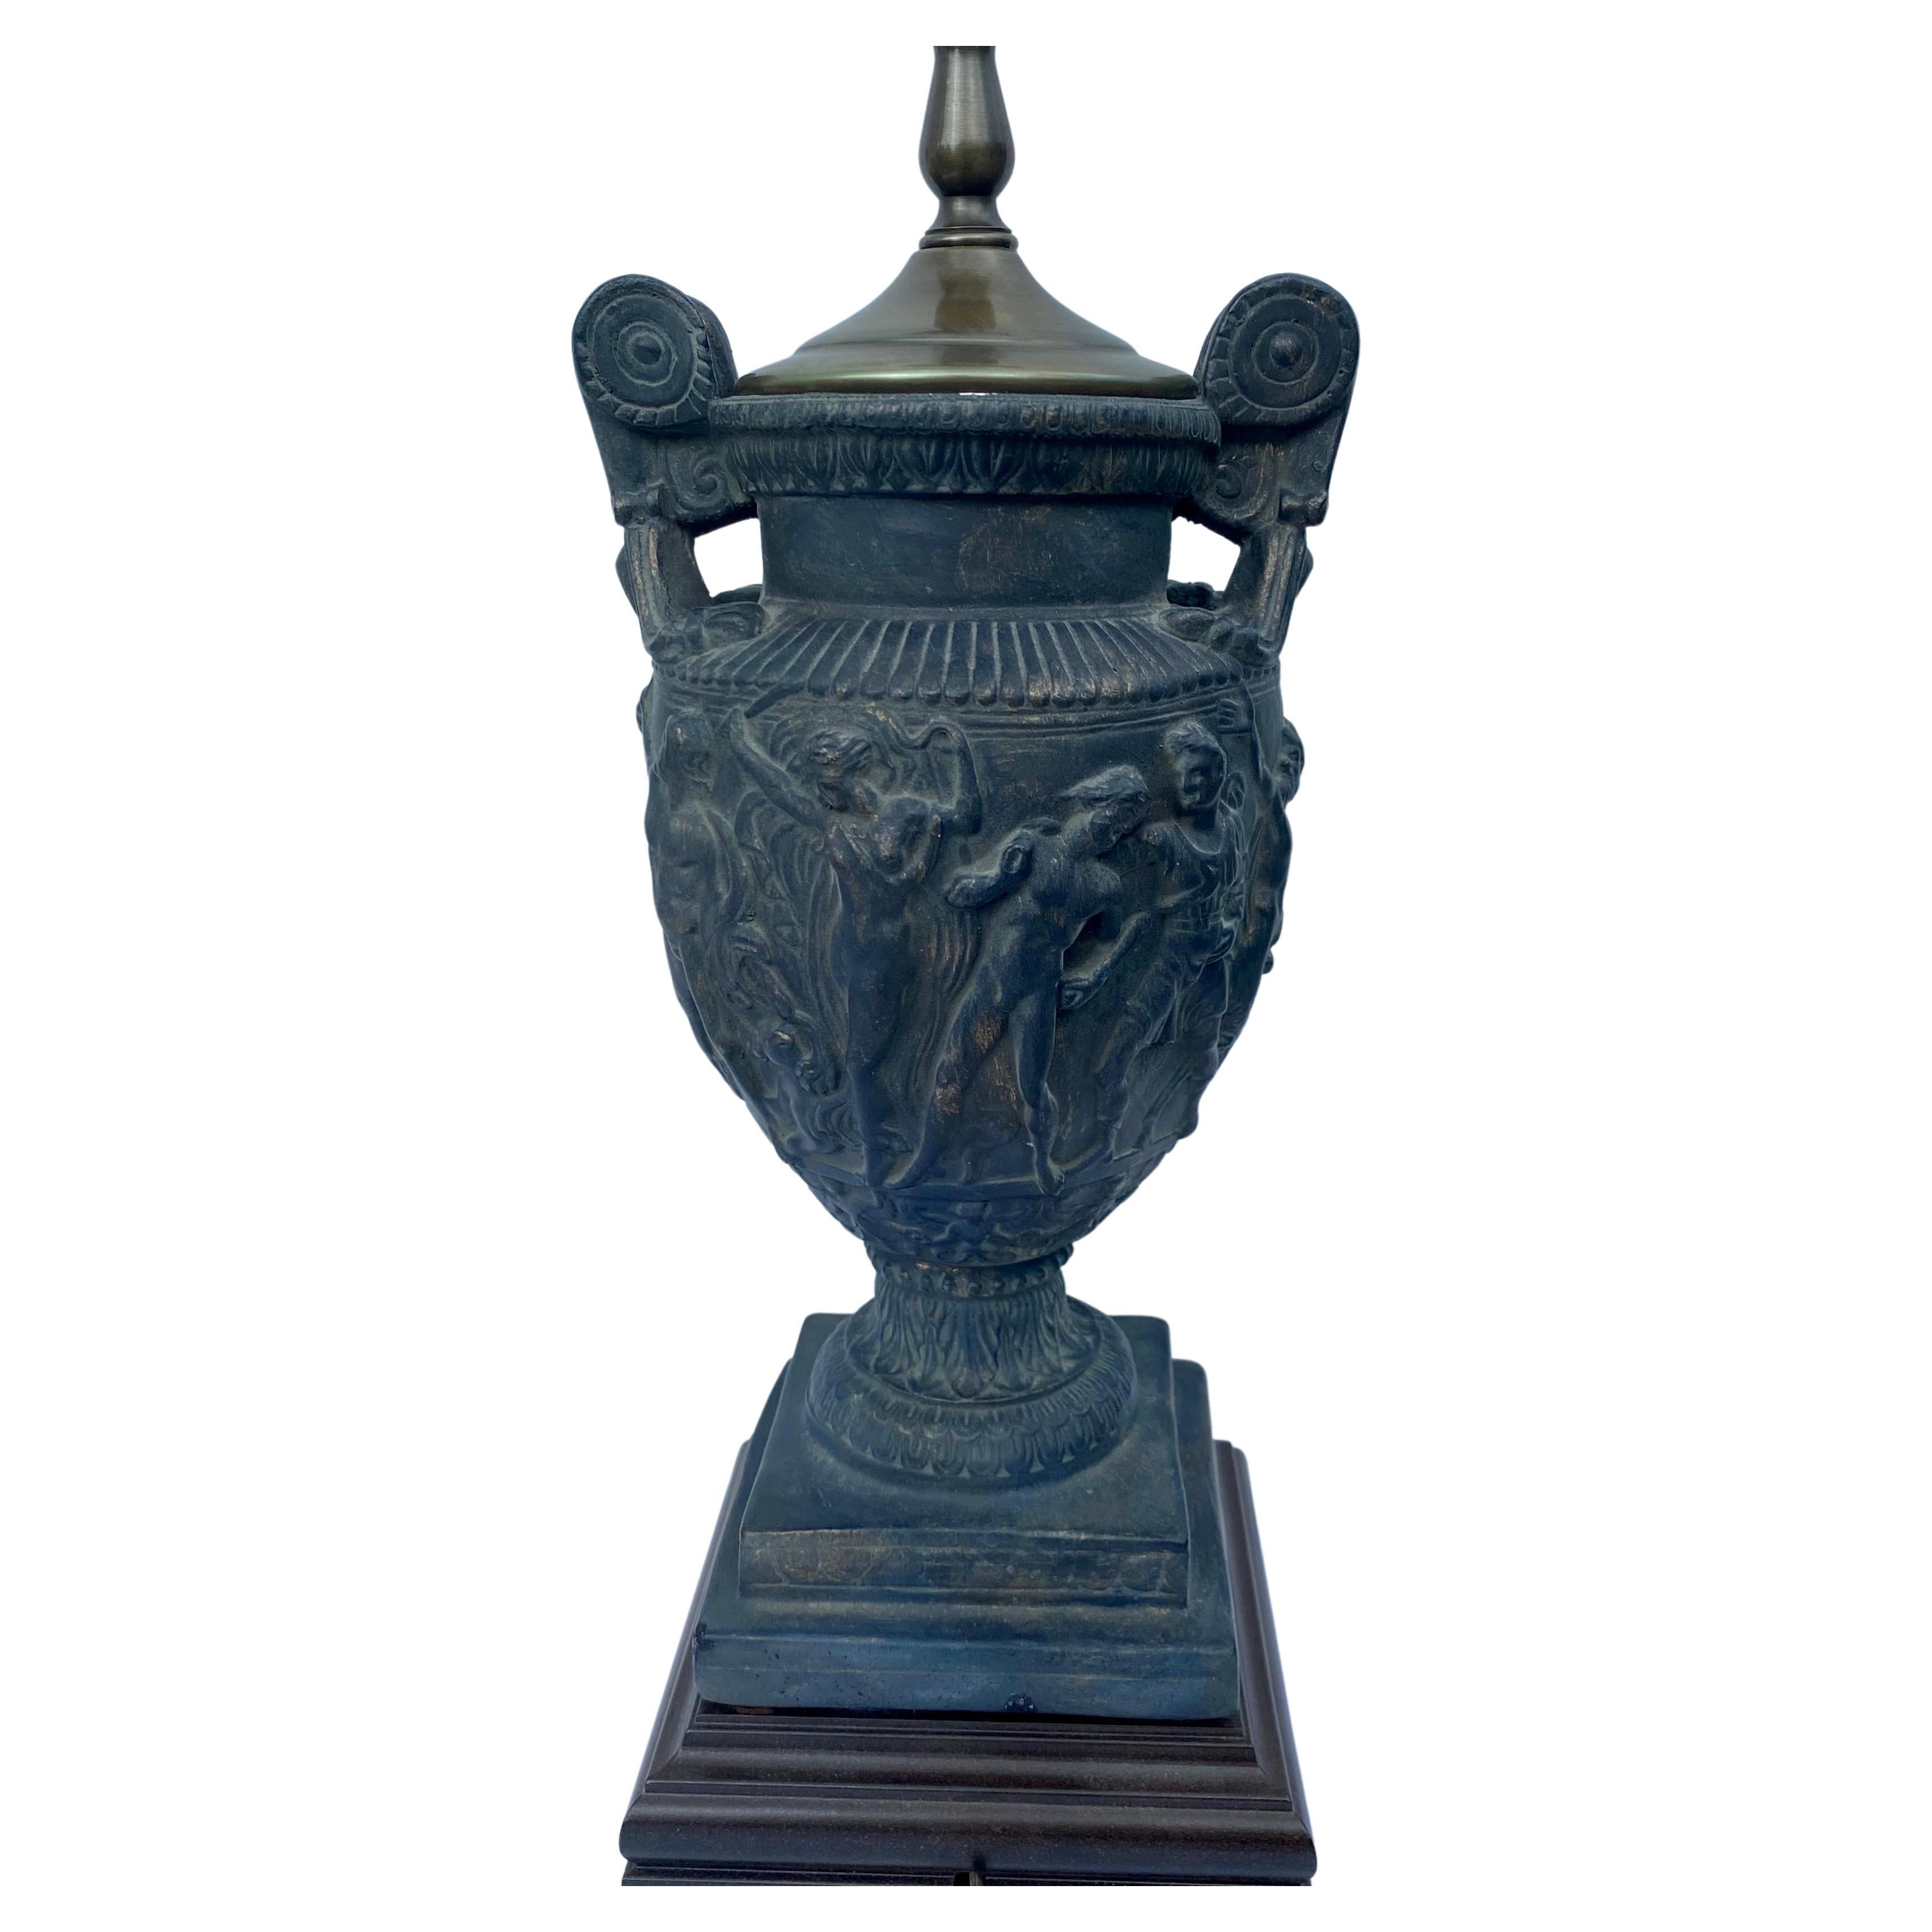 Lampe de table en forme d'urne à poignée classique montée sur un socle en bois carré. Cette lampe en forme d'urne s'inspire du vase romain Towley et présente des figures en relief dans une finition patinée noire vieillie. Abat-jour non inclus.